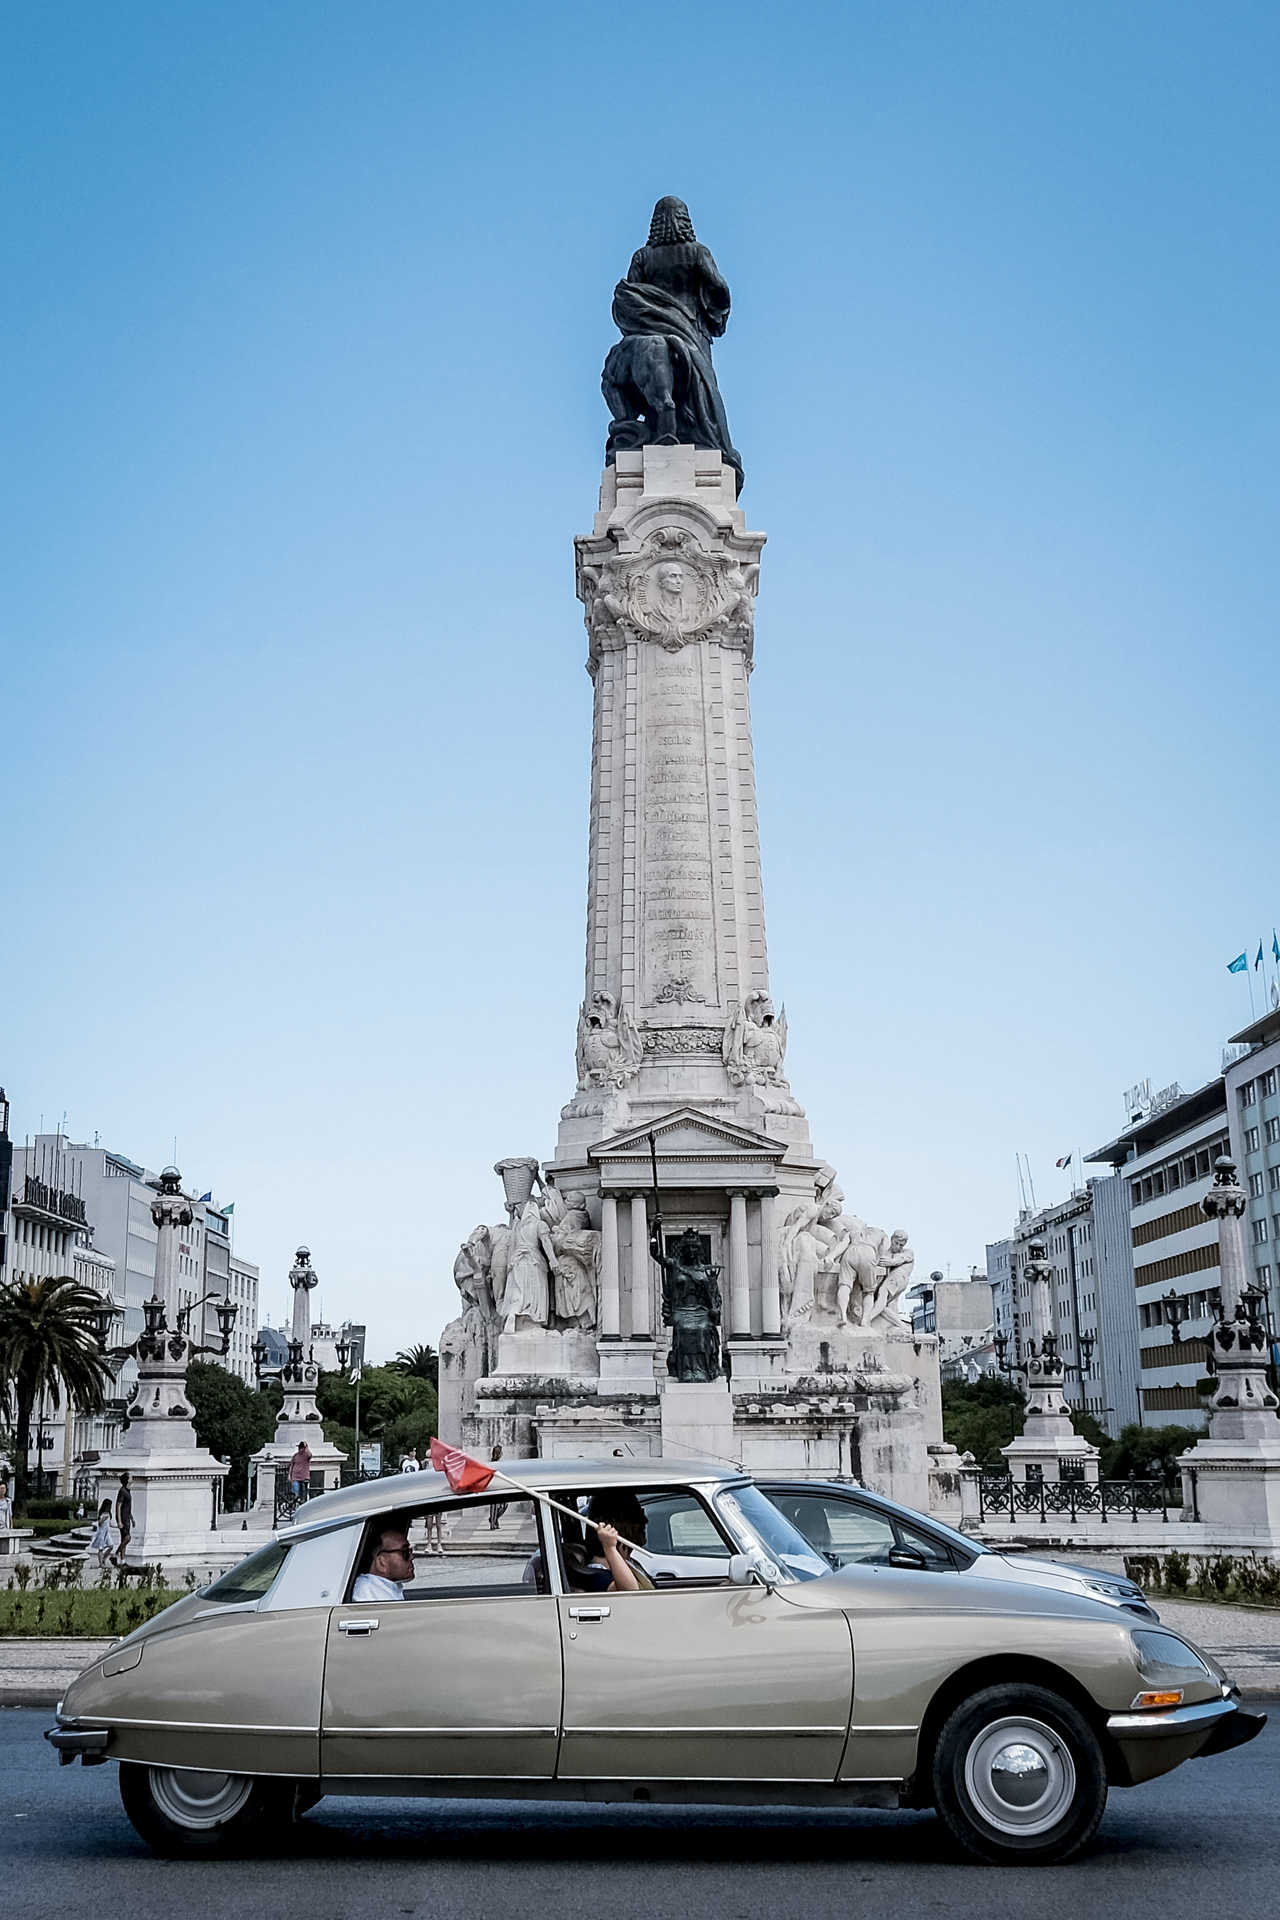 Evento dos 100 anos da Citroën em Portugal.